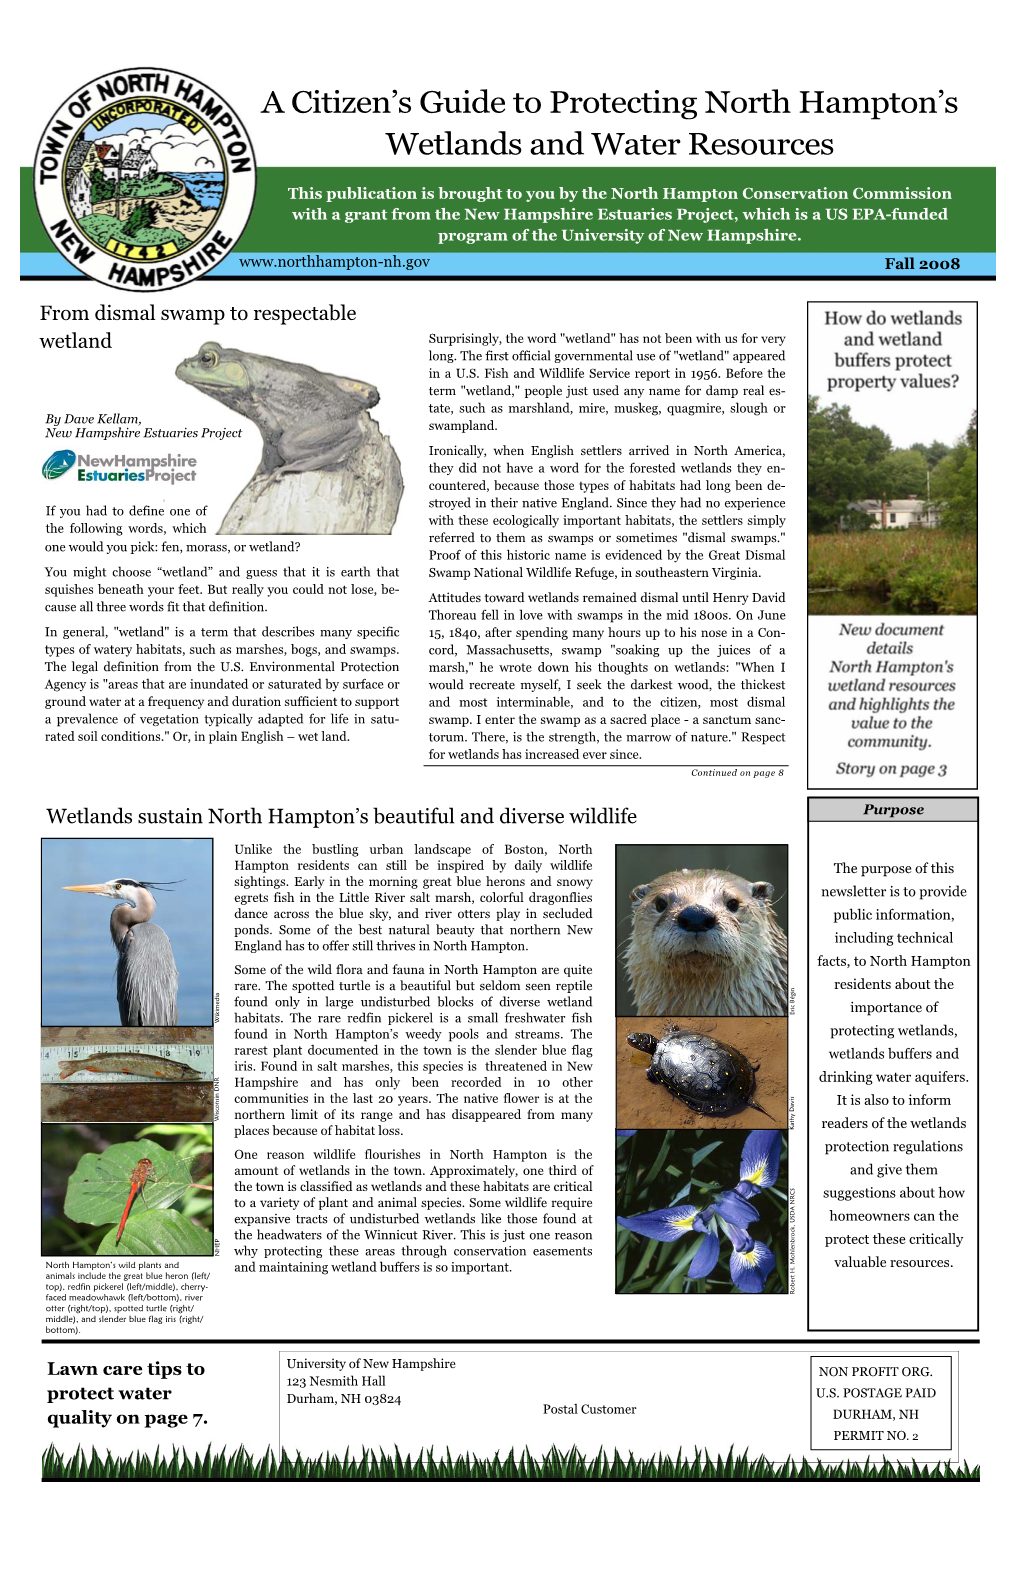 Wetlands Buffer Newsletter, Fall 2008